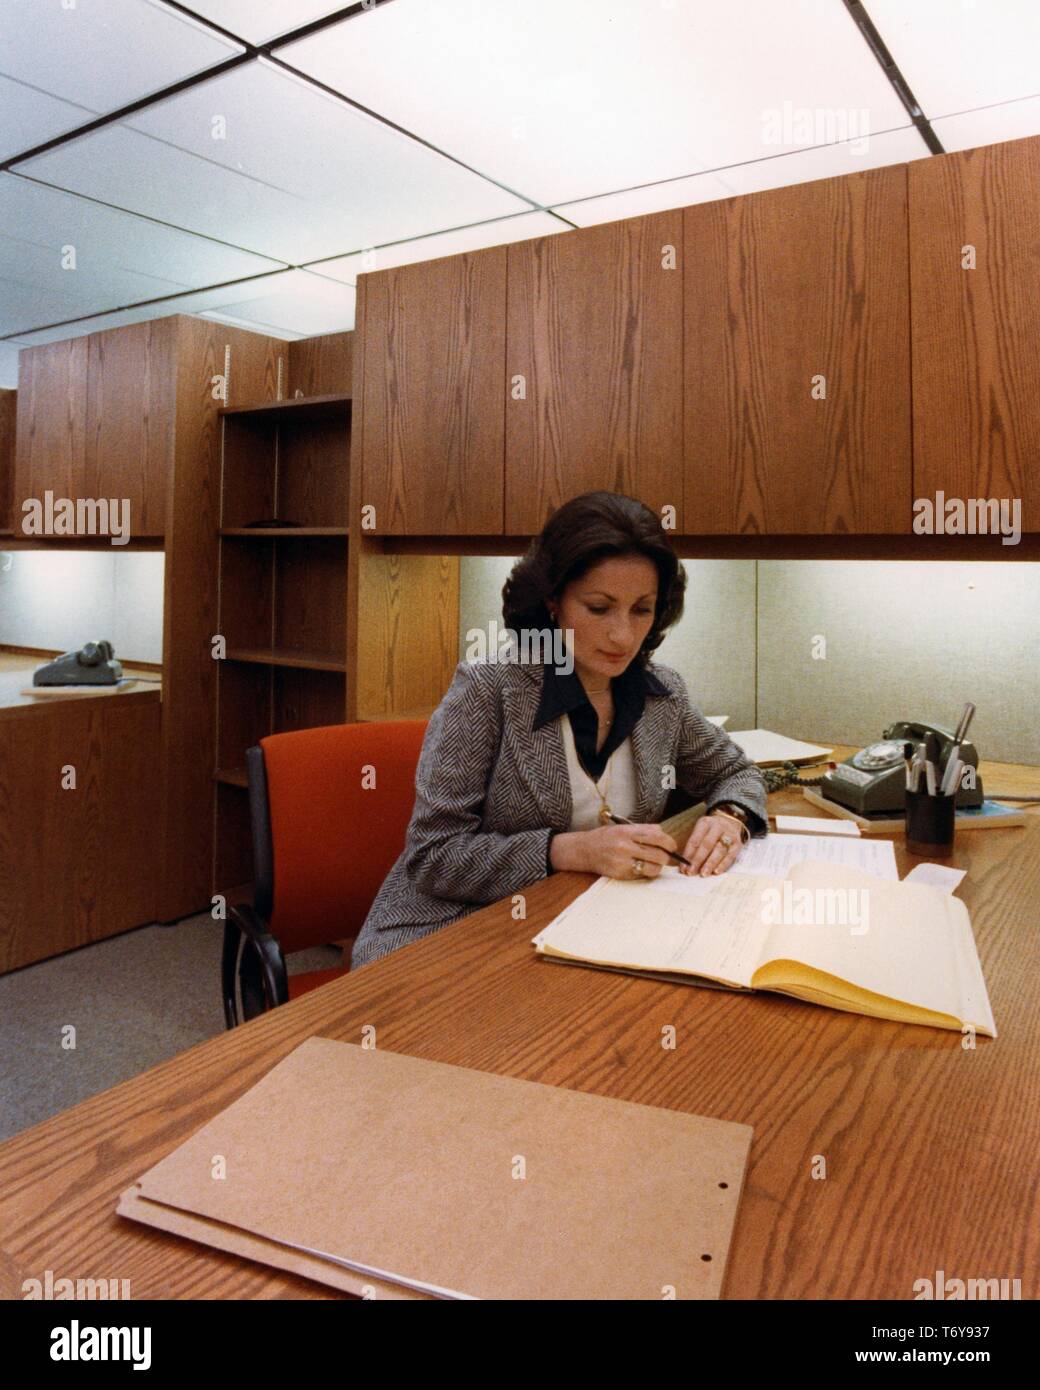 Plano medio de una empleada, trabajando en un escritorio equipado con iluminación eficiente, en el Edificio Federal de algodón Norris, Manchester, New Hampshire, 1975. Imagen cortesía del Departamento de Energía de Estados Unidos. () Foto de stock